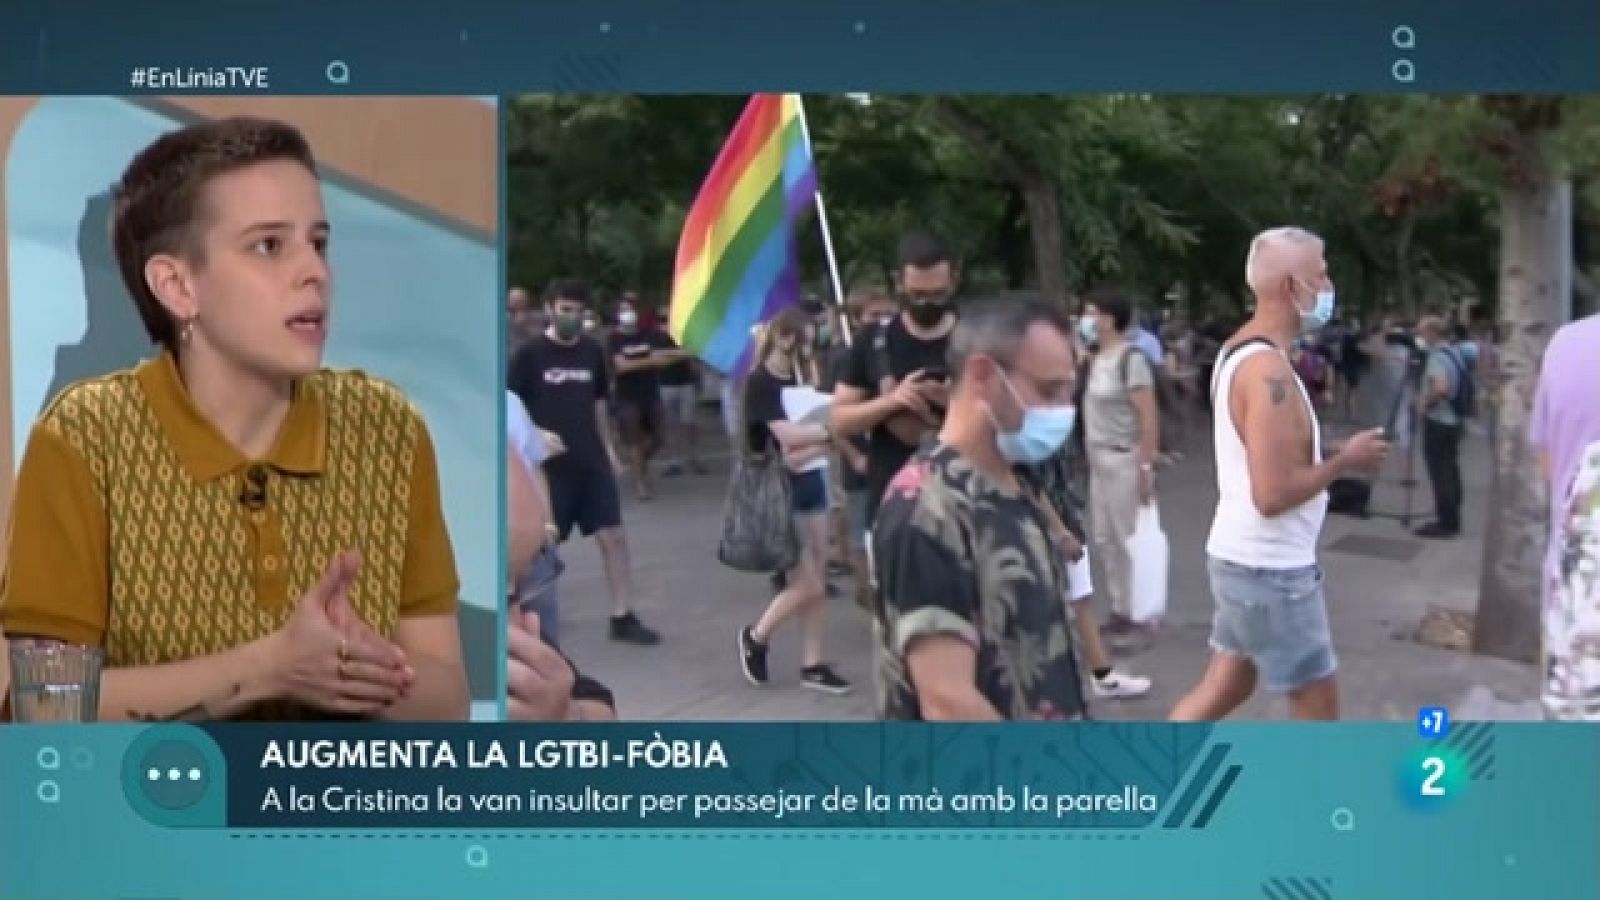 L'increment de les agressions LGTBI-fòbiques | En Línia - RTVE Catalunya